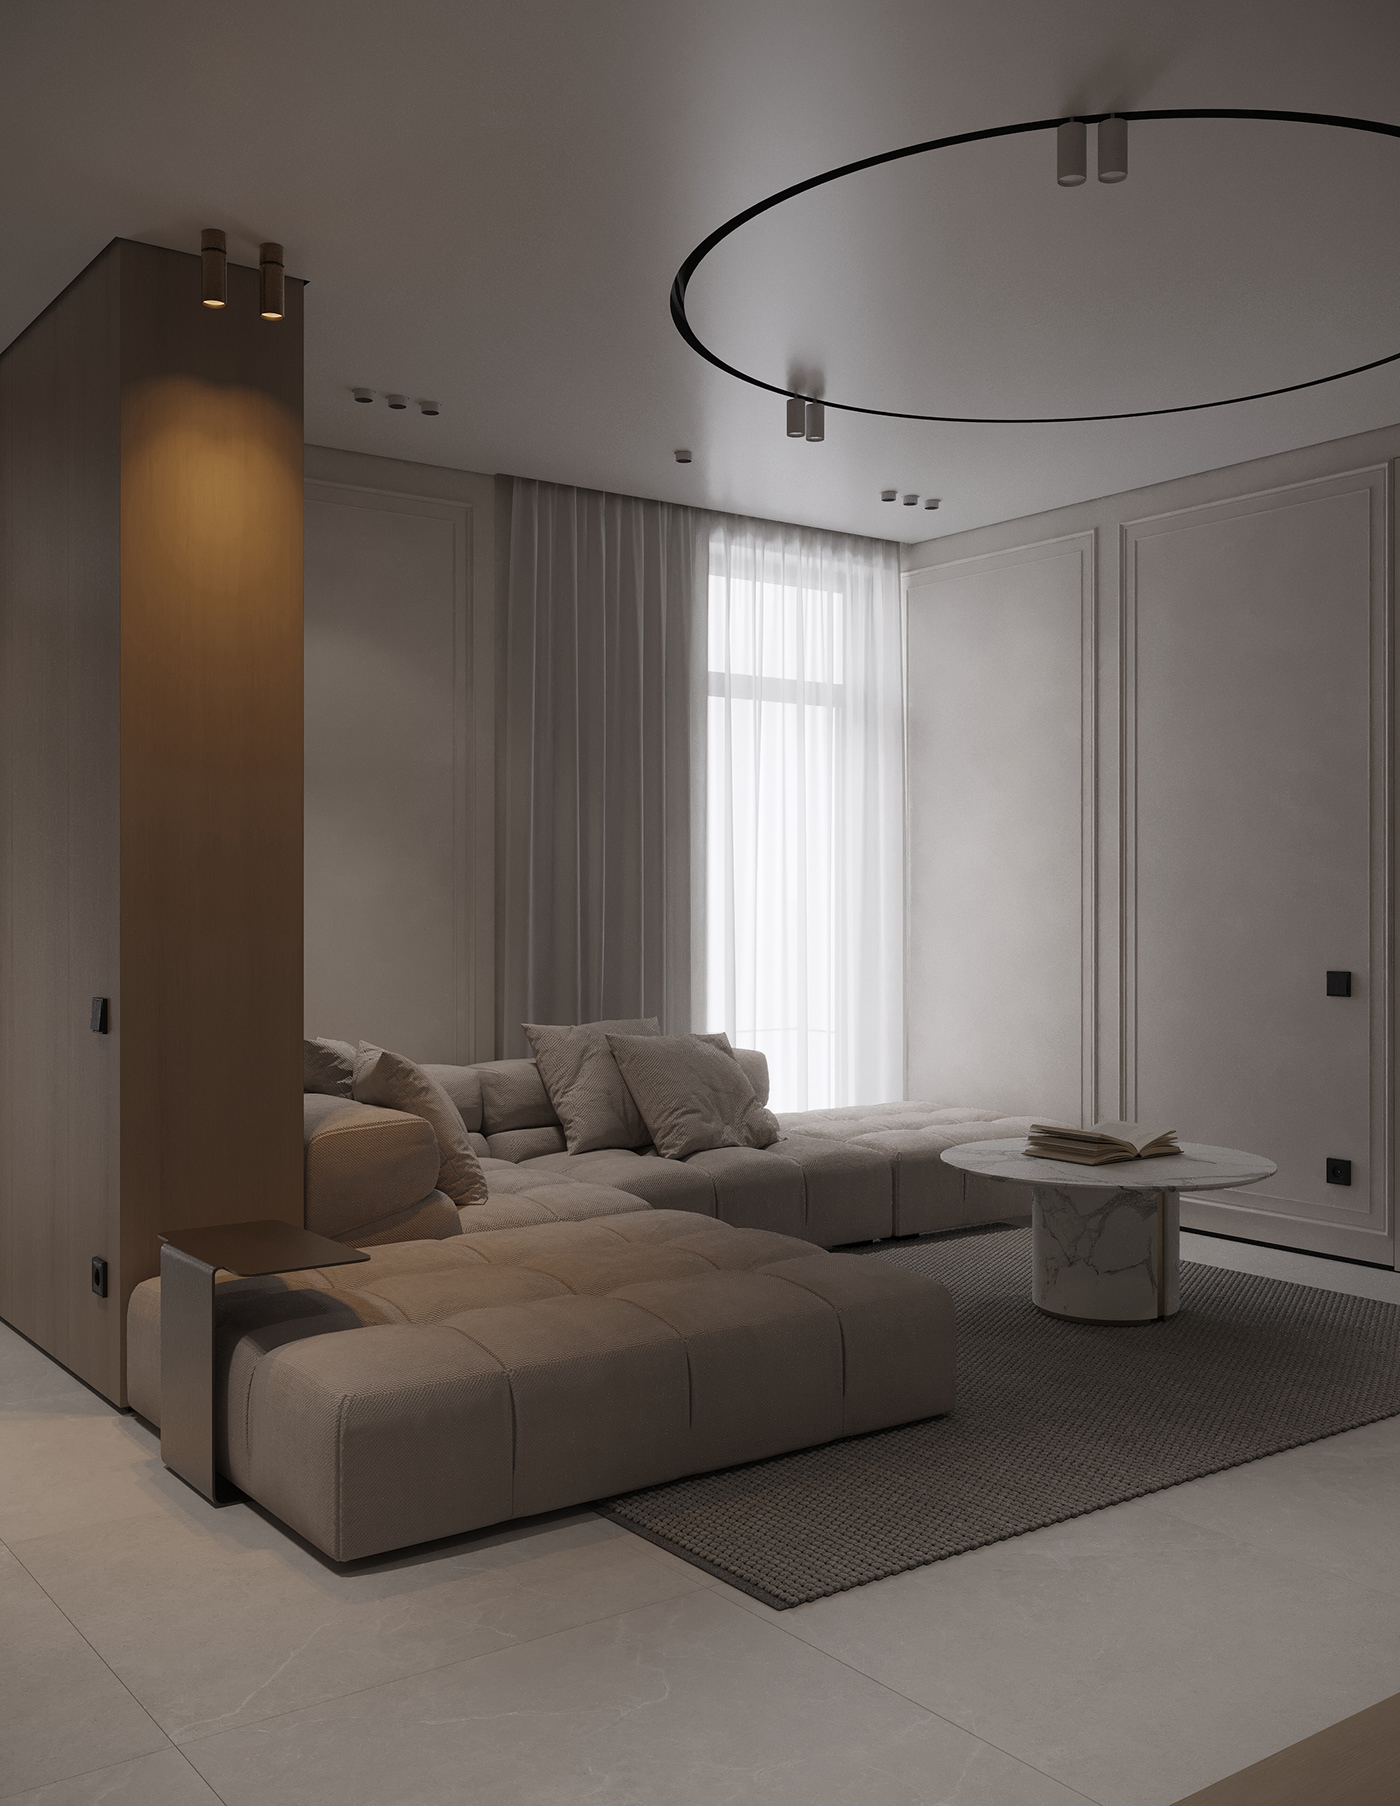 3ds max architecture archviz design Interior interior design  Render visualization Vizualization